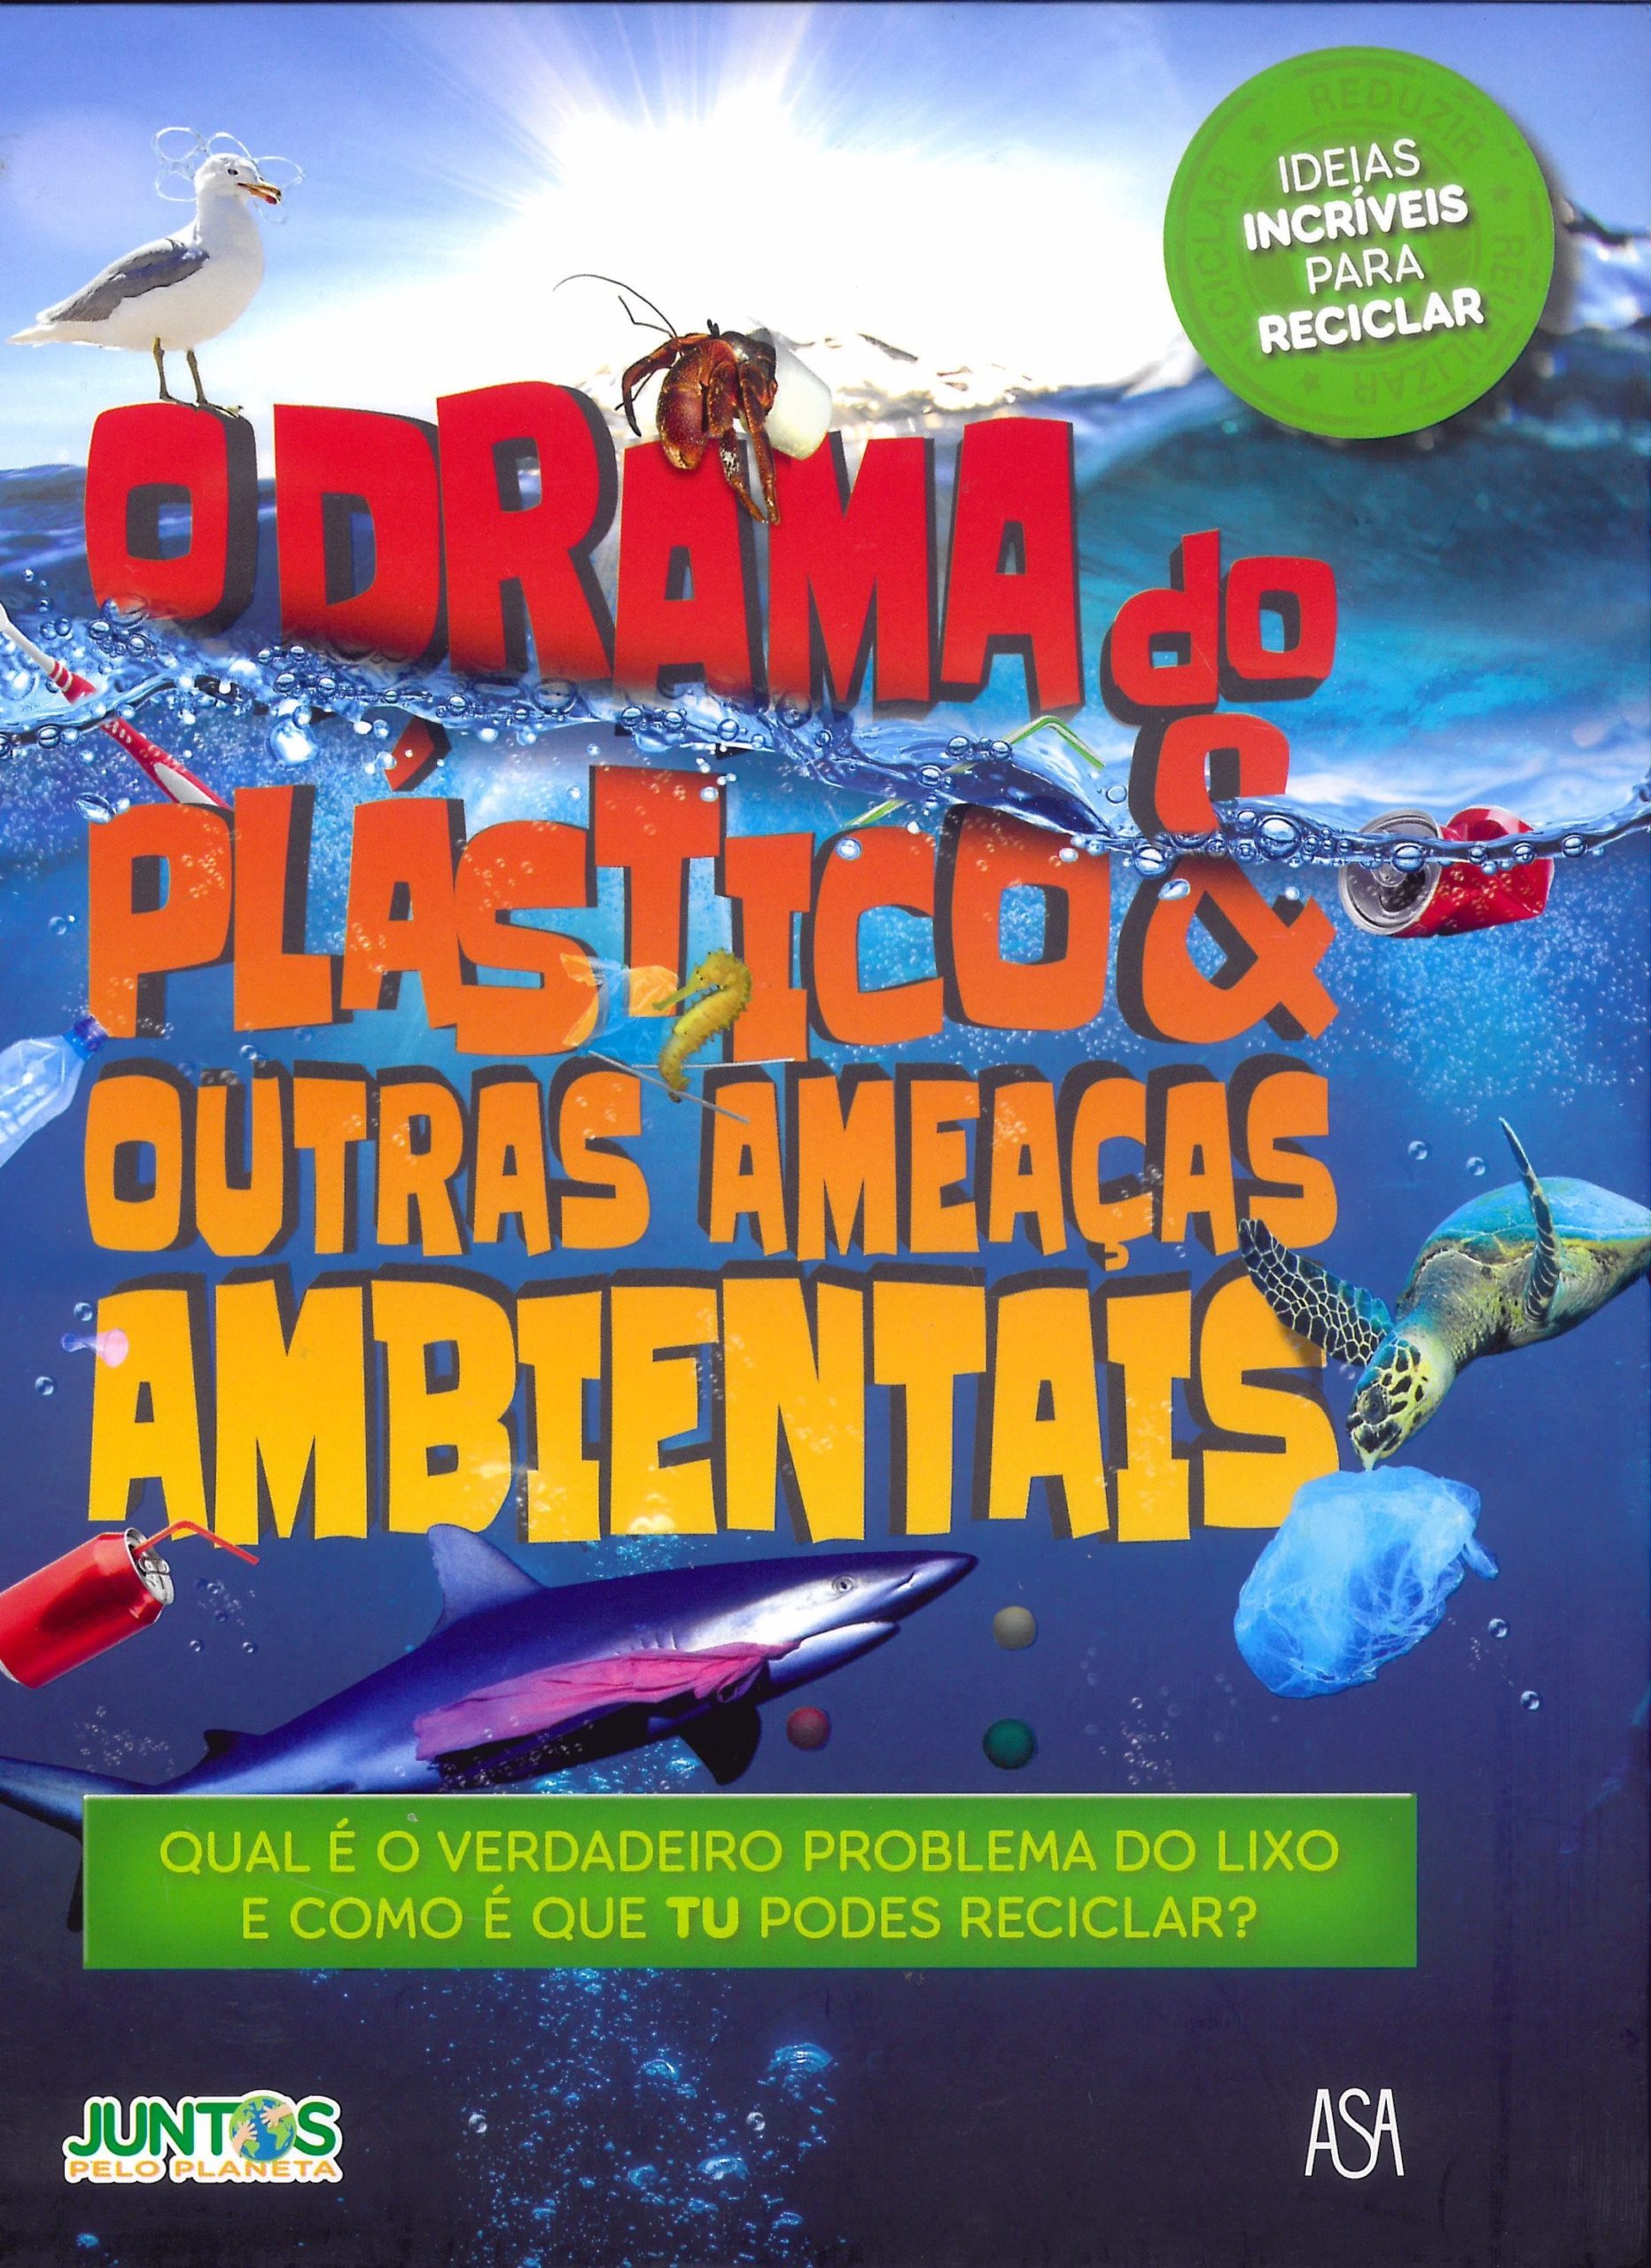 O drama do plástico e outras ameaças ambientais